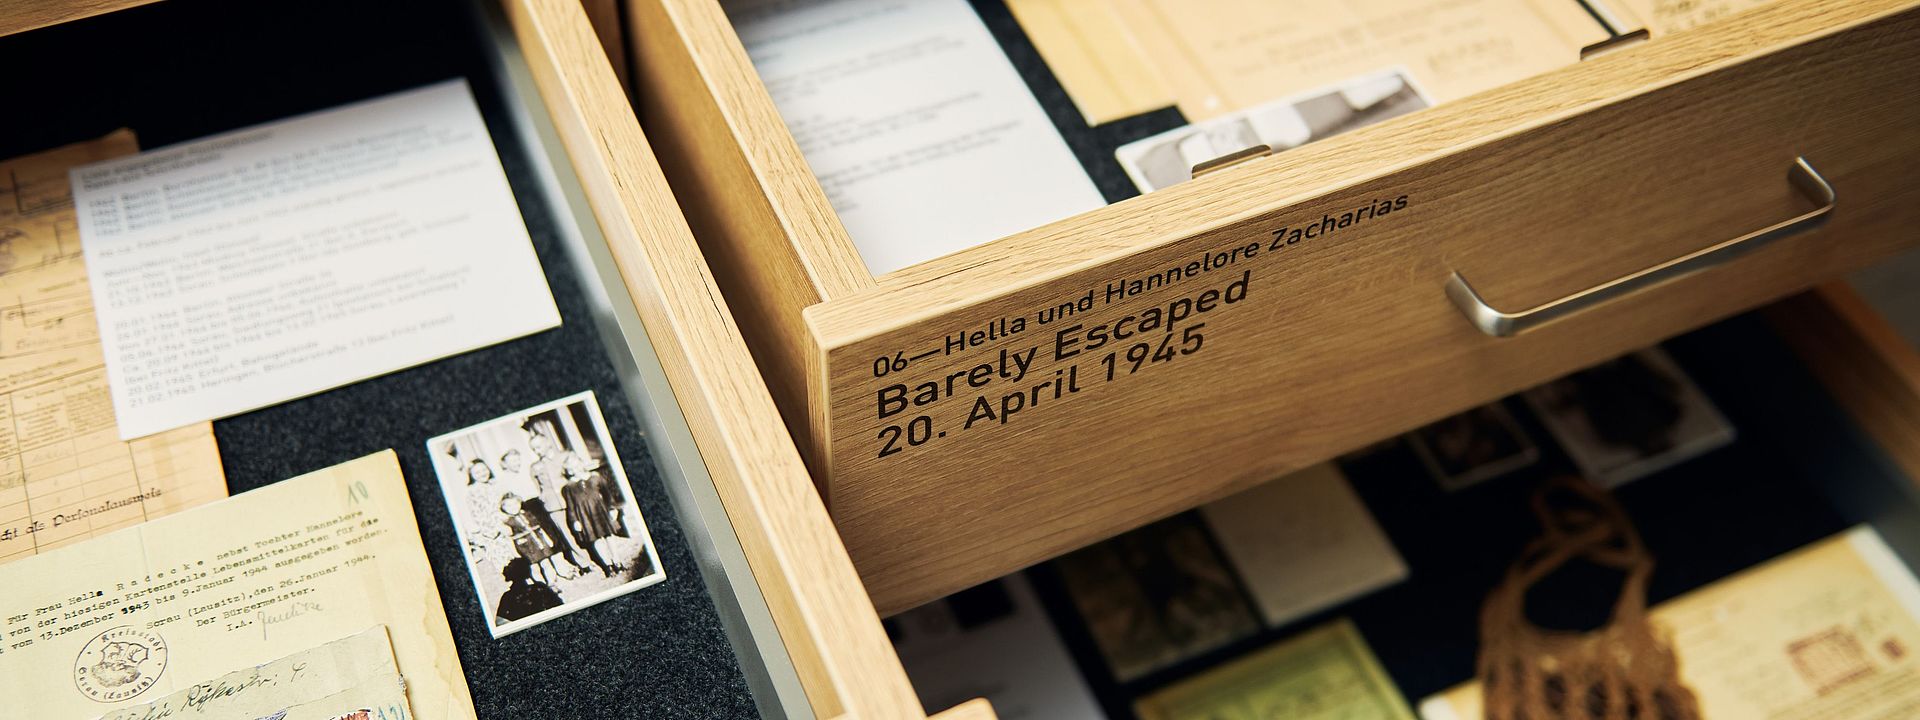 Blick in zwei geöffnete Schubladen mit Unterlagen, Briefen und Fotos. Auf einer Schublade ist zu lesen: Hella und Hannelore Zacharias. Barely Escaped, 20. April 1945